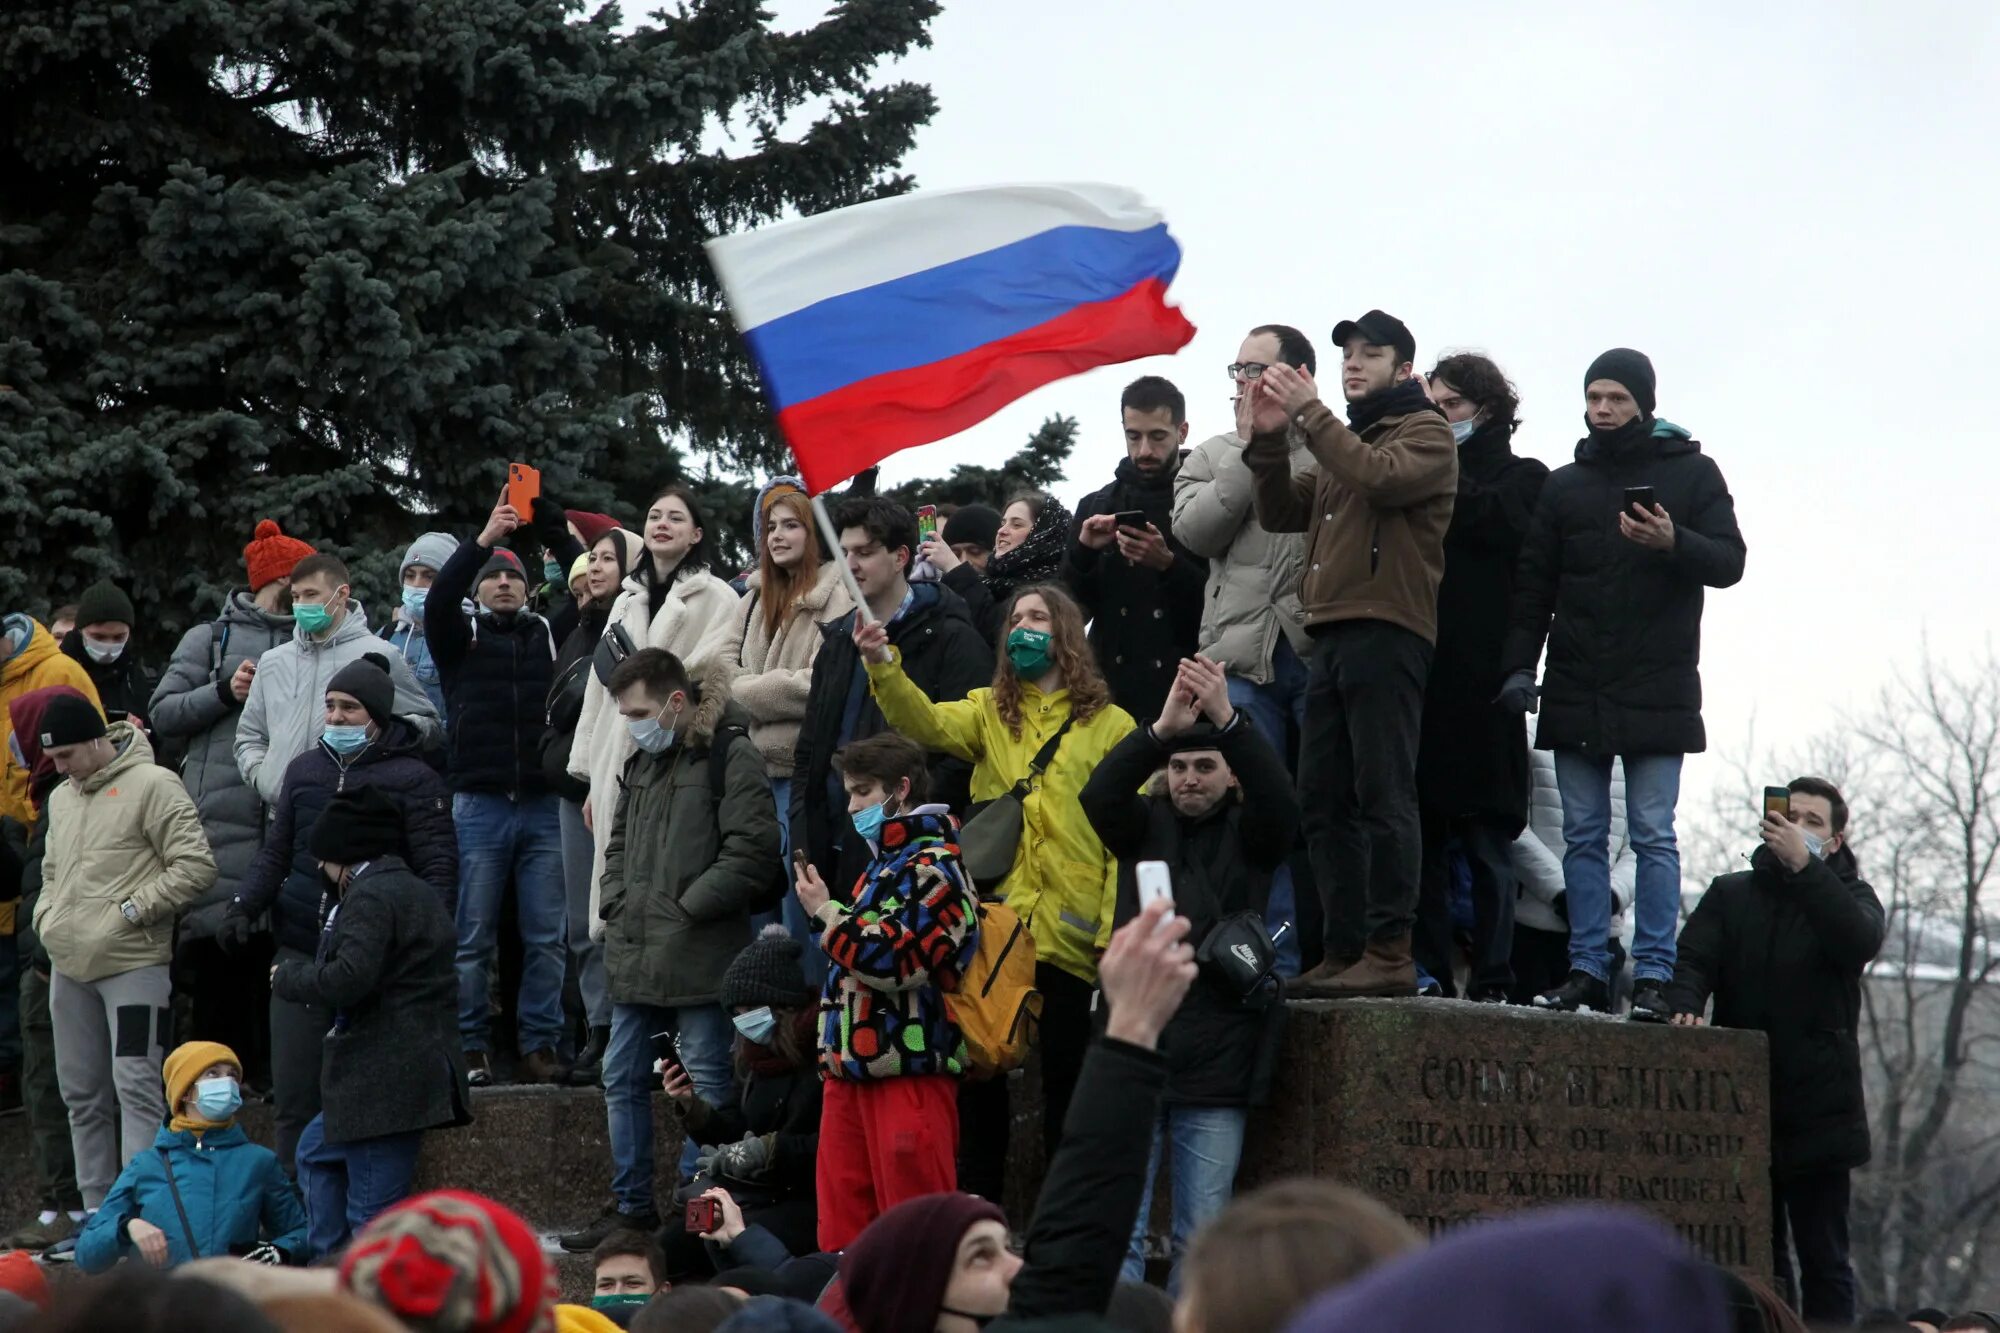 Какой митинг проходит. Законные митинги. Митинги в России. Митинг Навального. Митинг в Александровском саду.